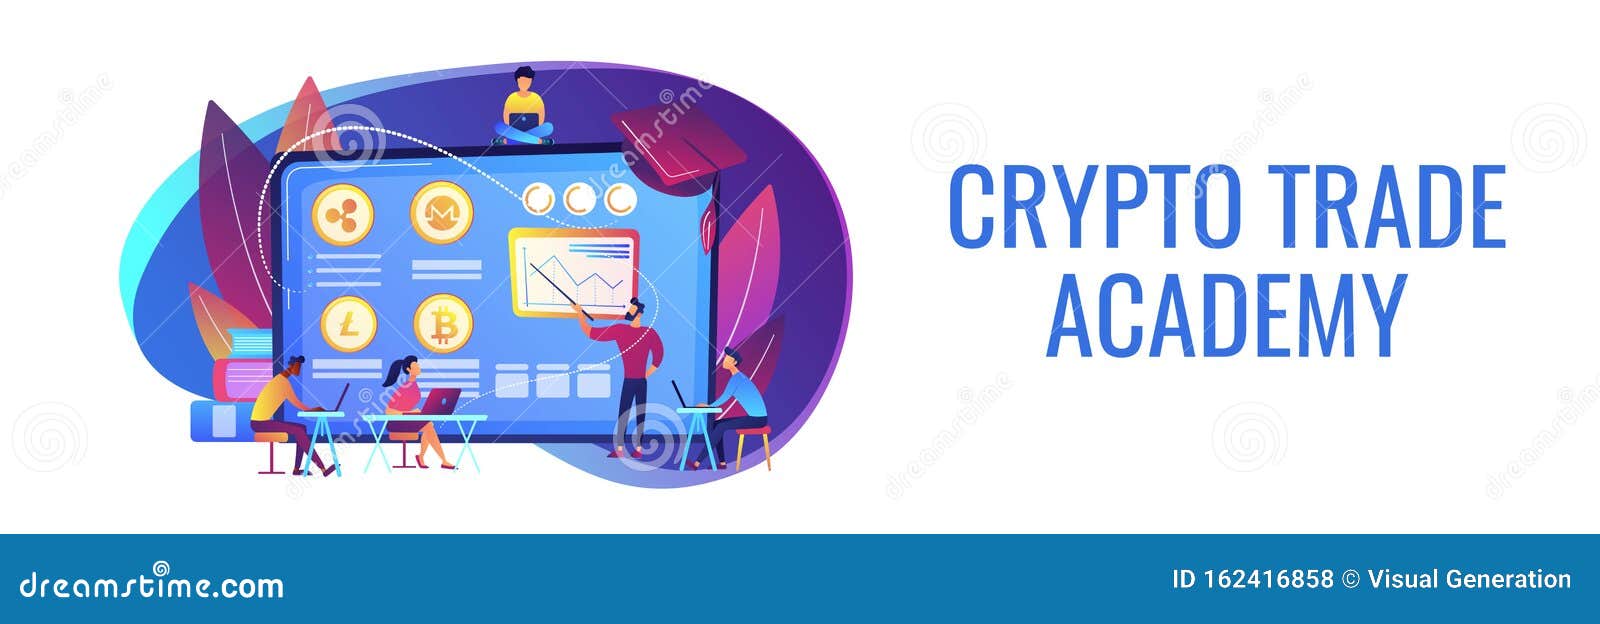 crypto trading academy)